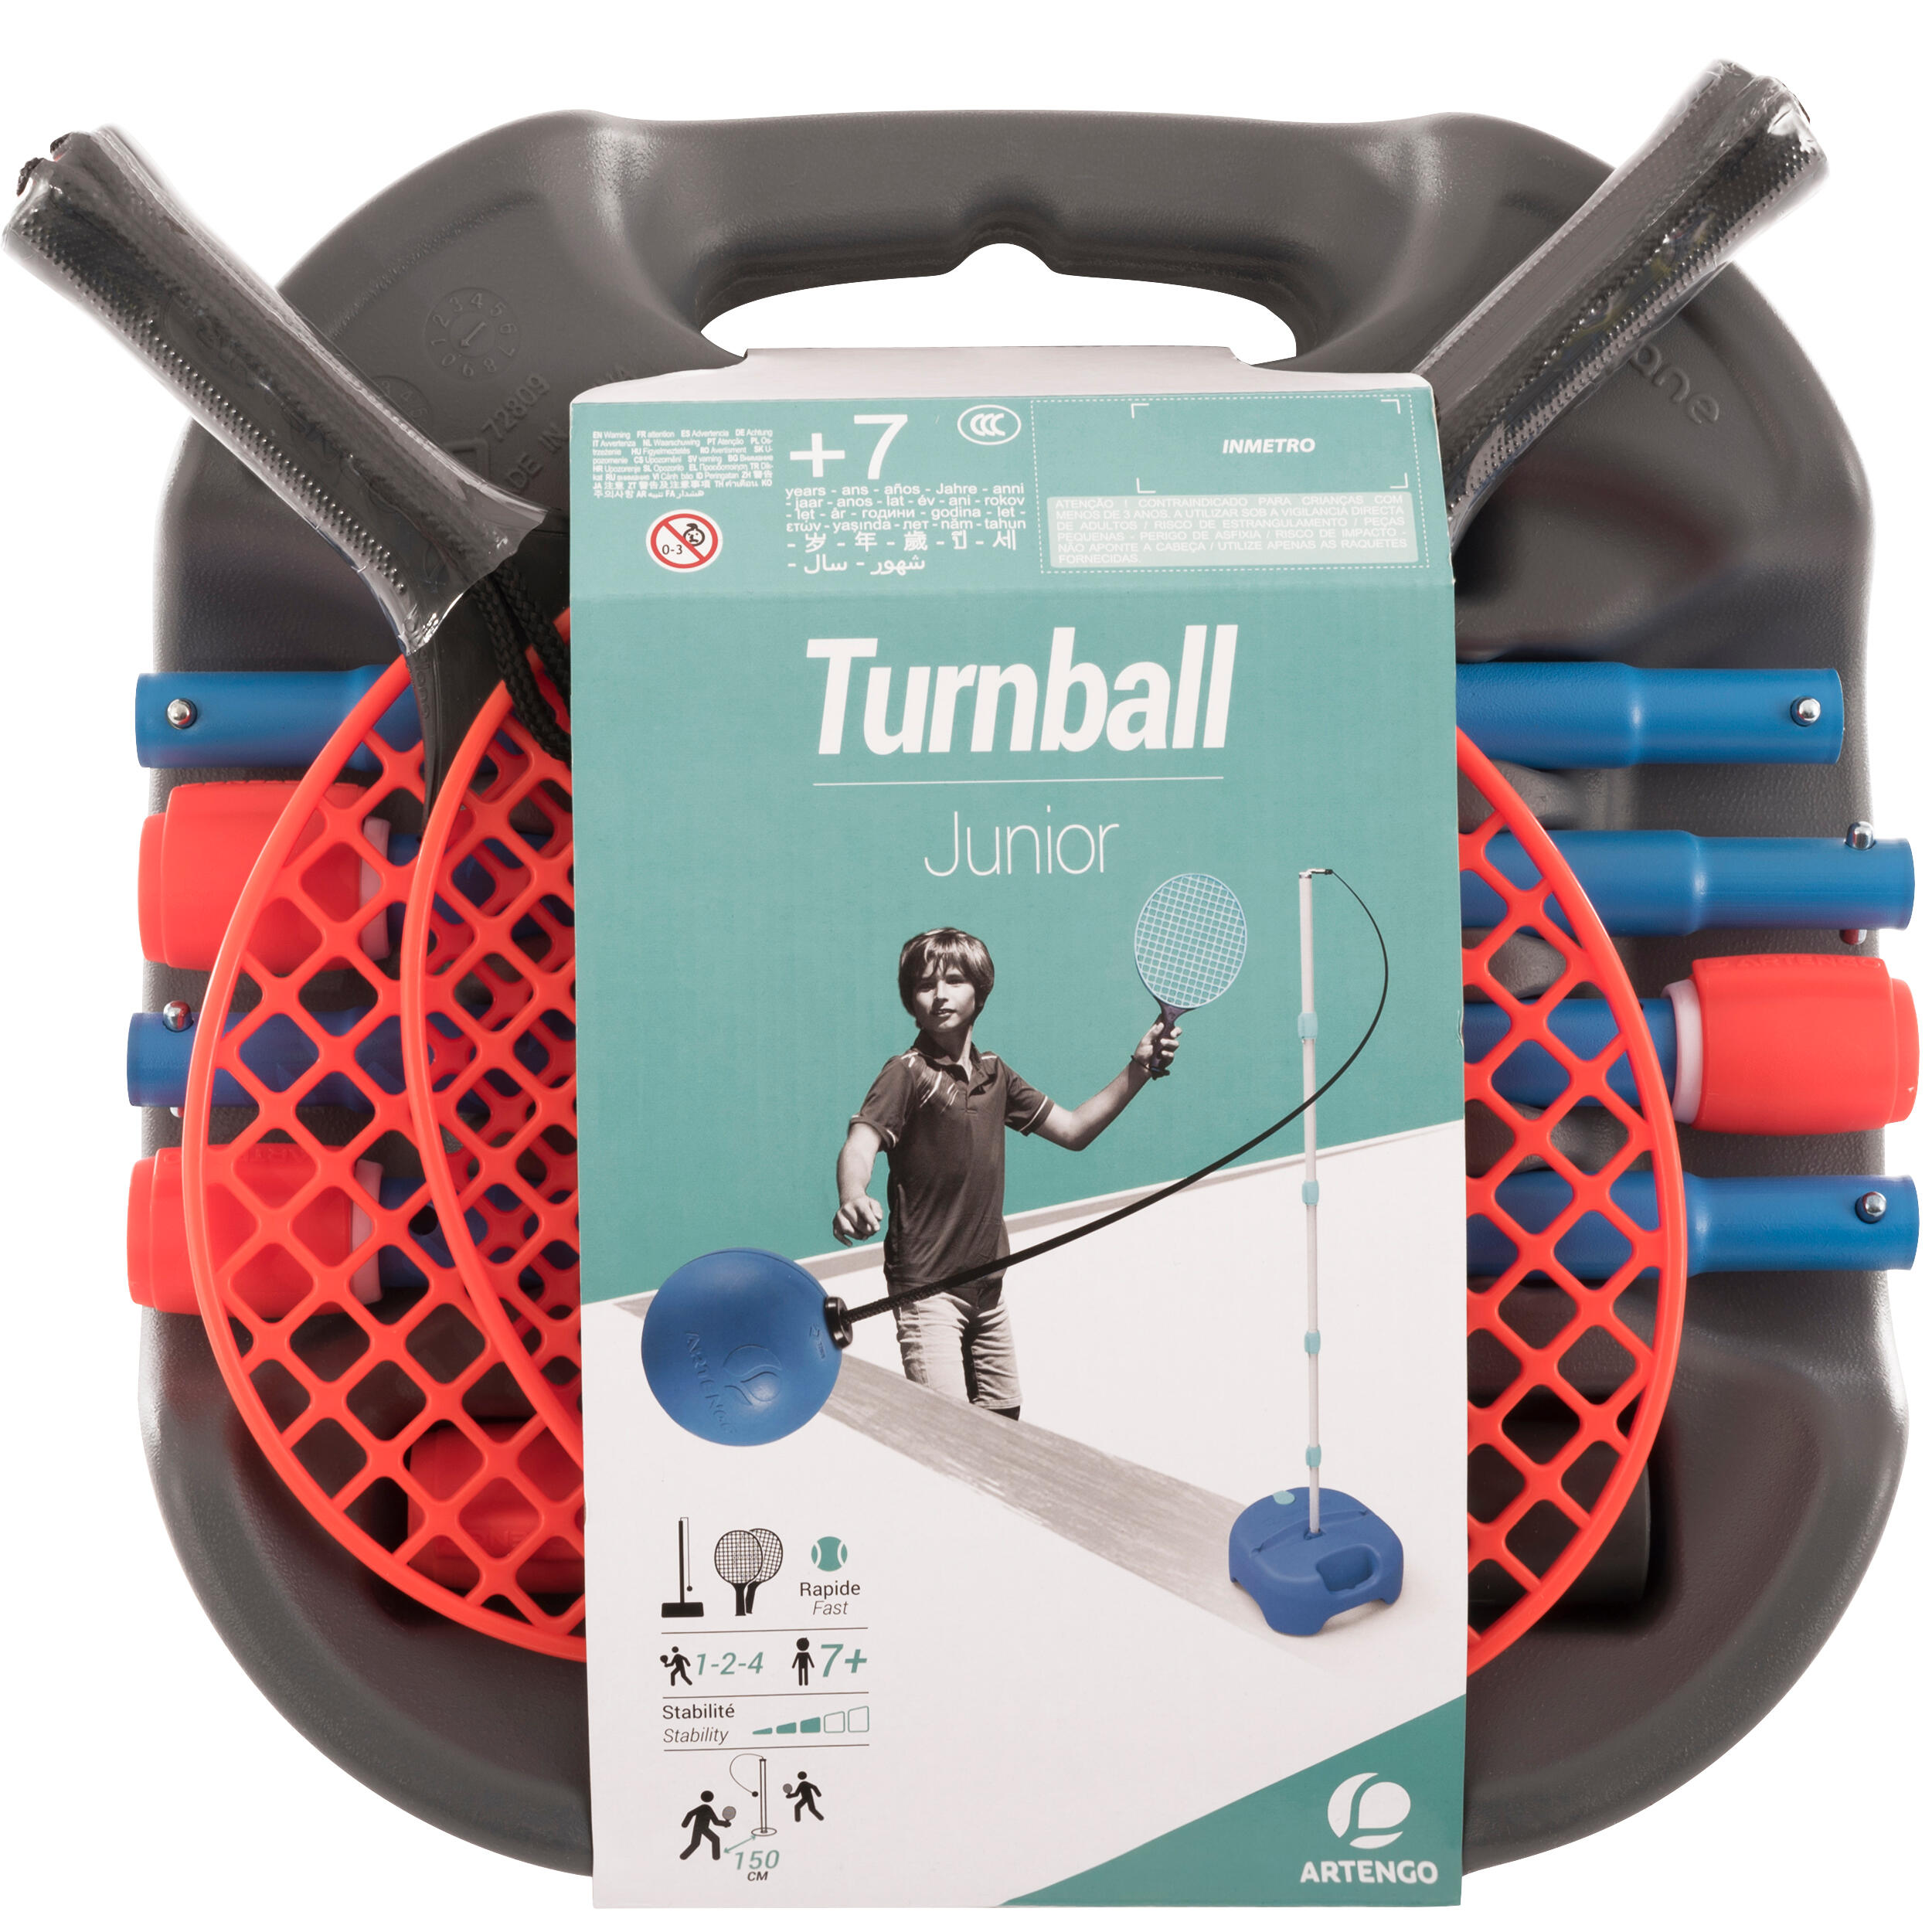 Speedball Set Turnball (1 post, 2 bats 